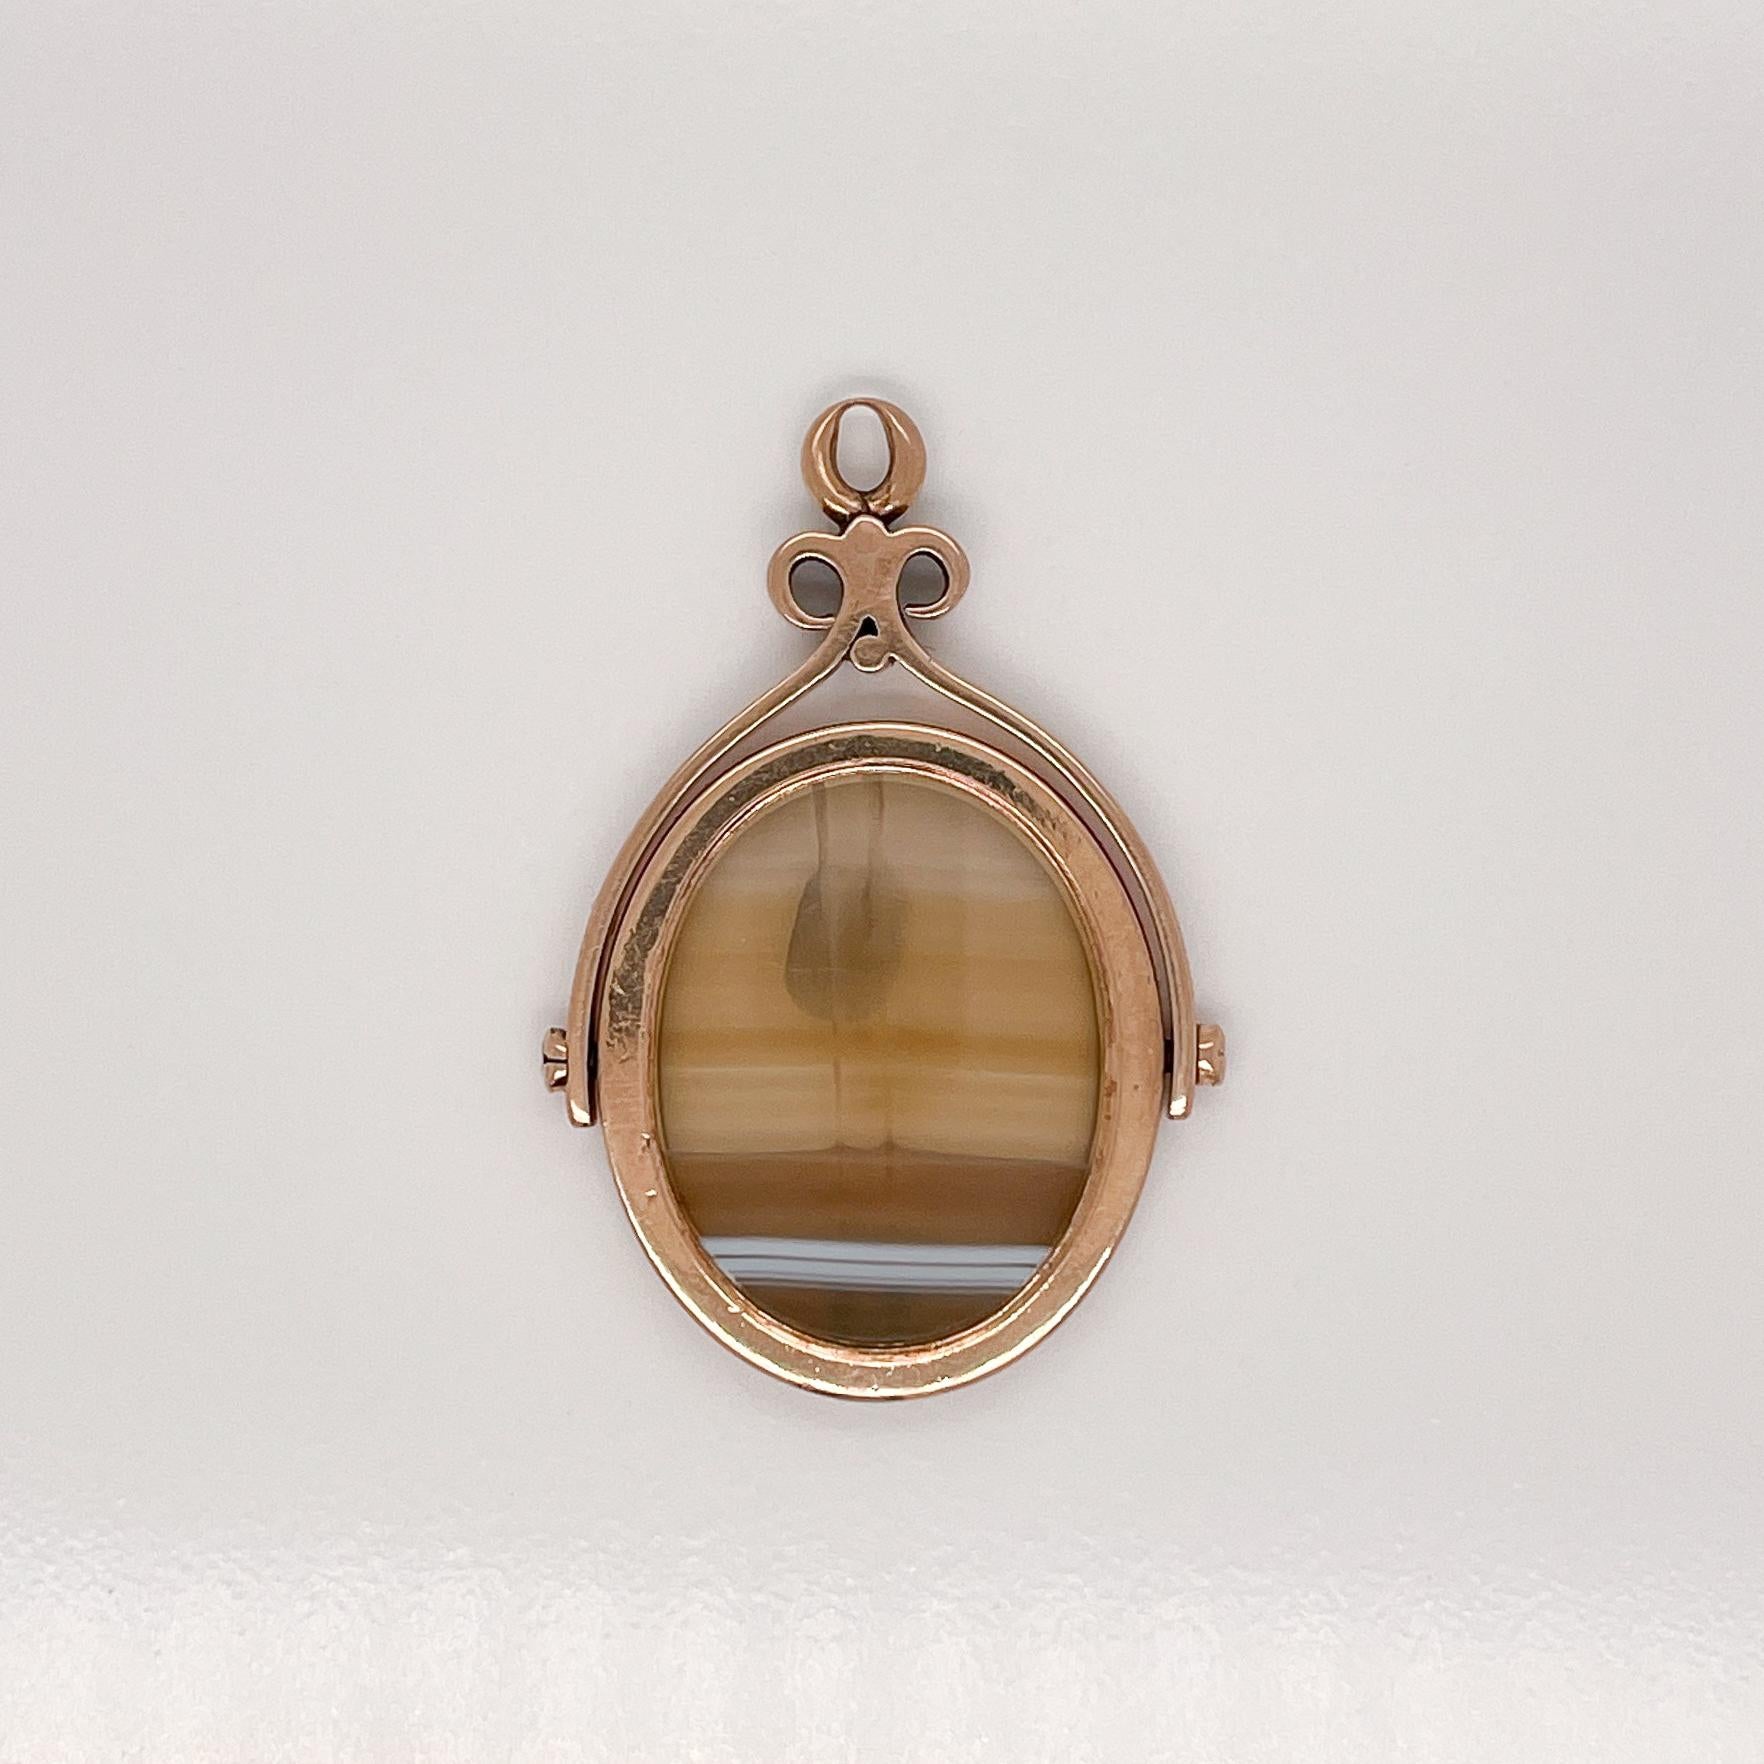 Un très beau pendentif à breloque en or antique et agate.

Avec une tranche ovale lisse d'agate sertie en or 14k et une charnière fixée de chaque côté pour que le charme puisse se retourner. 

Soutenu par un cadre en forme de volute avec une anse au